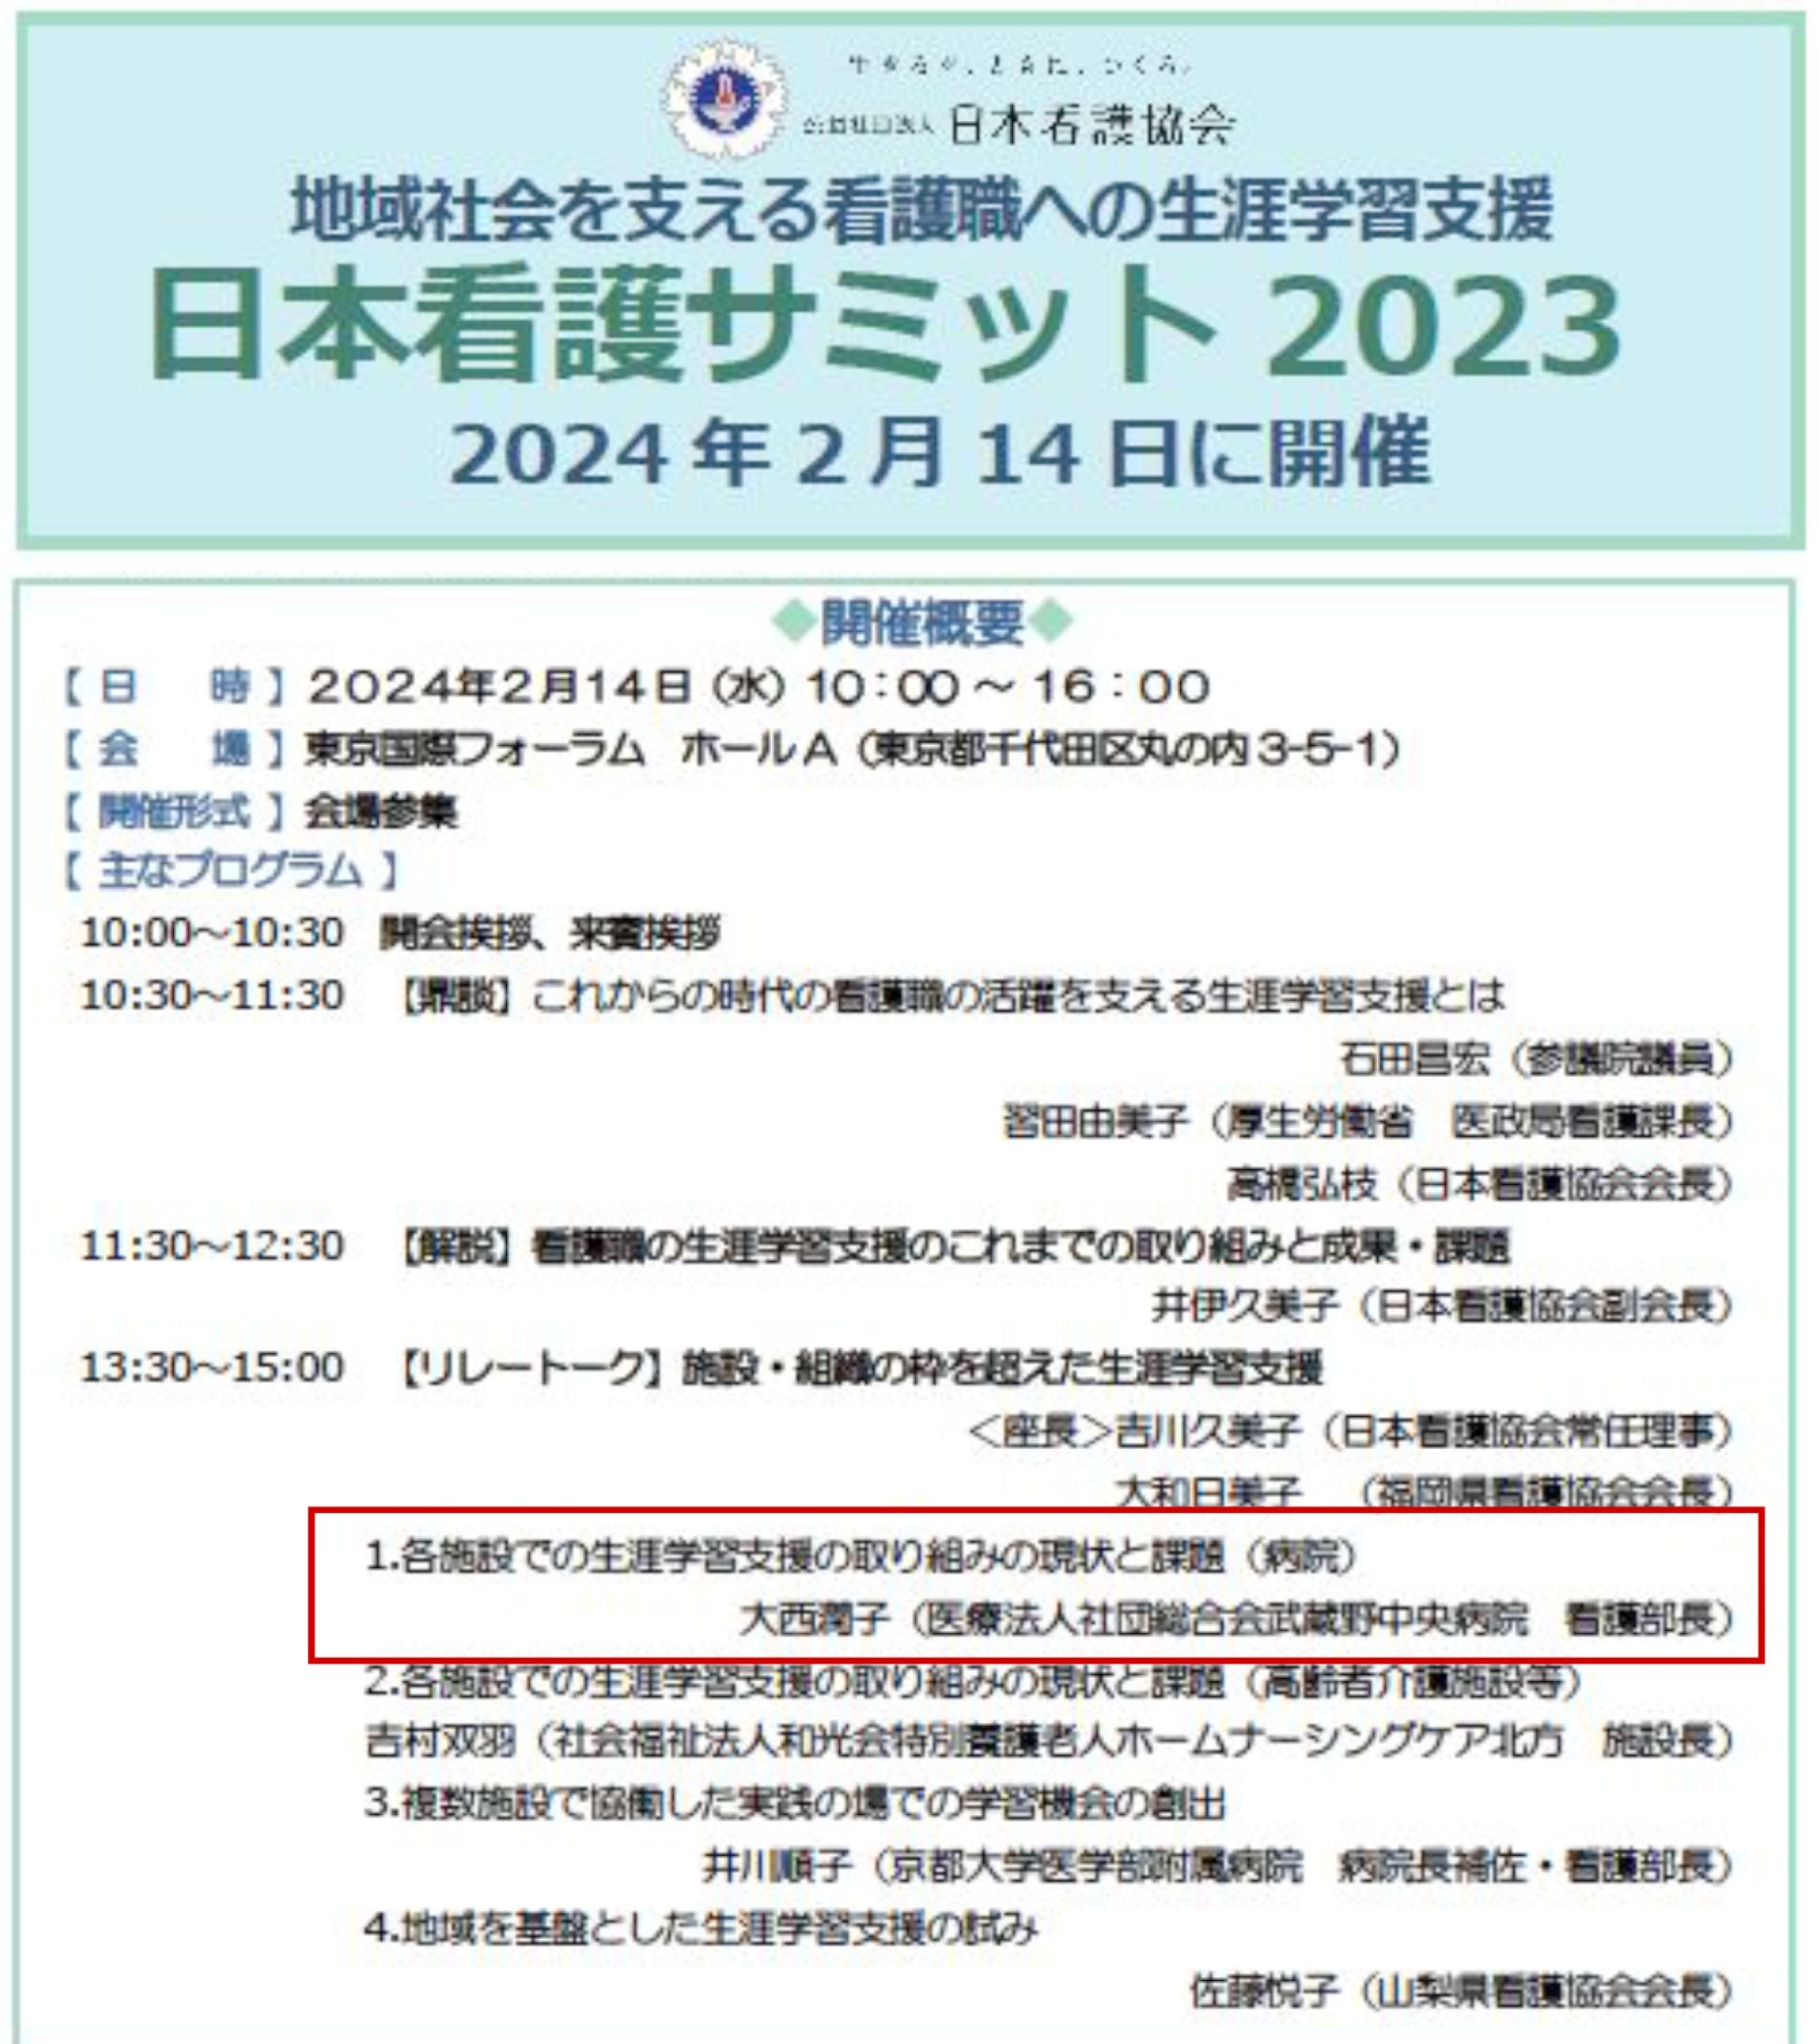 日本看護サミット2023開催